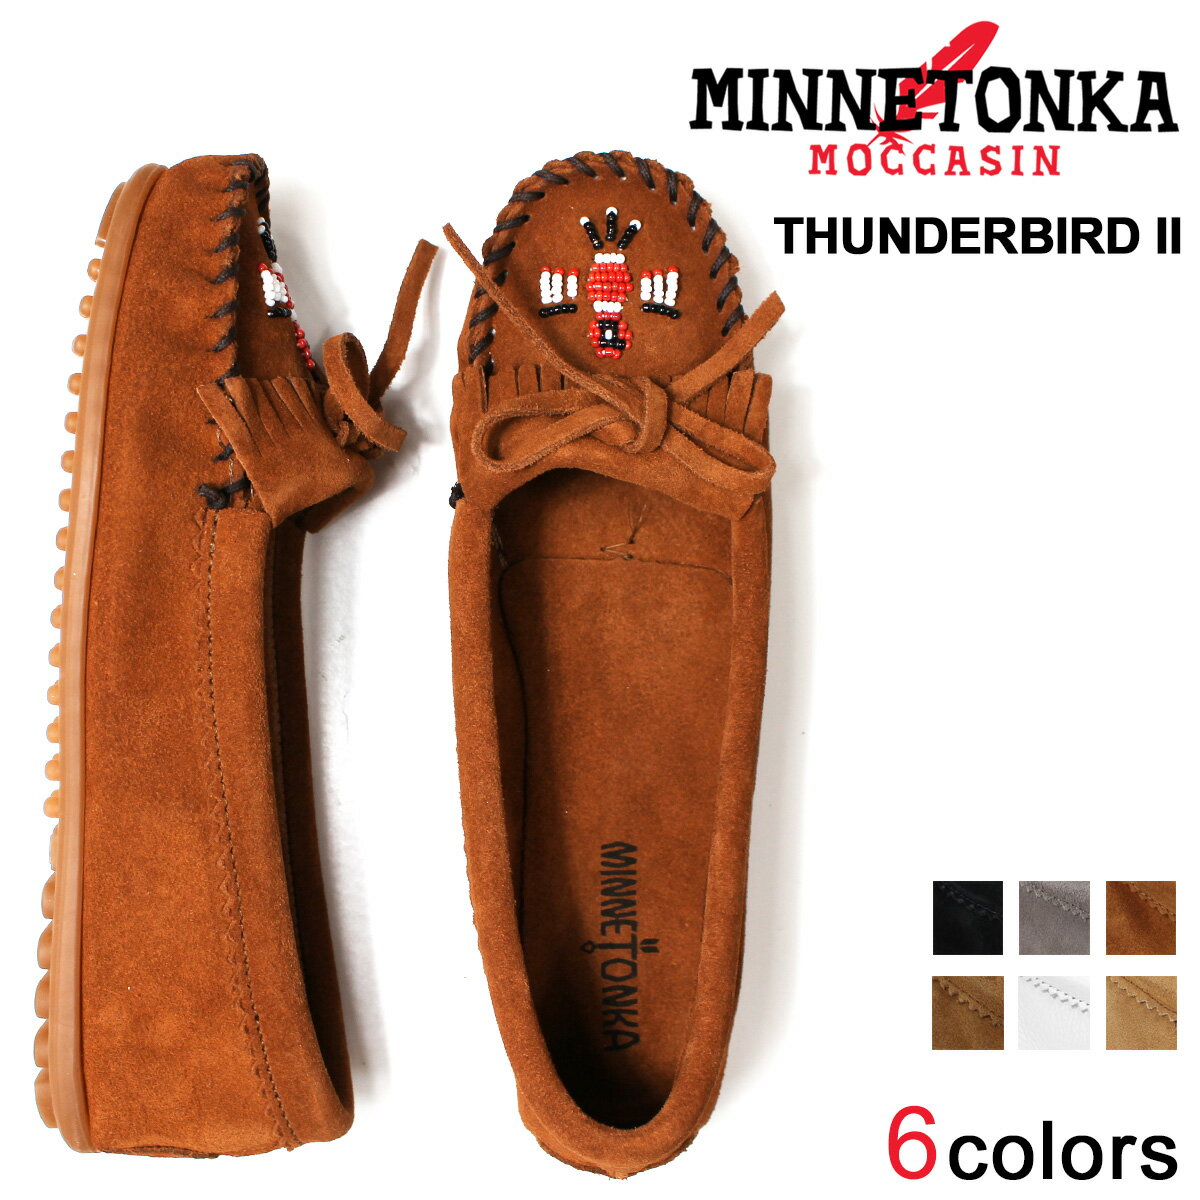 ミネトンカ MINNETONKA モカシン サン� ーバード 2 レディース フラットシューズ THUNDERBIRD II